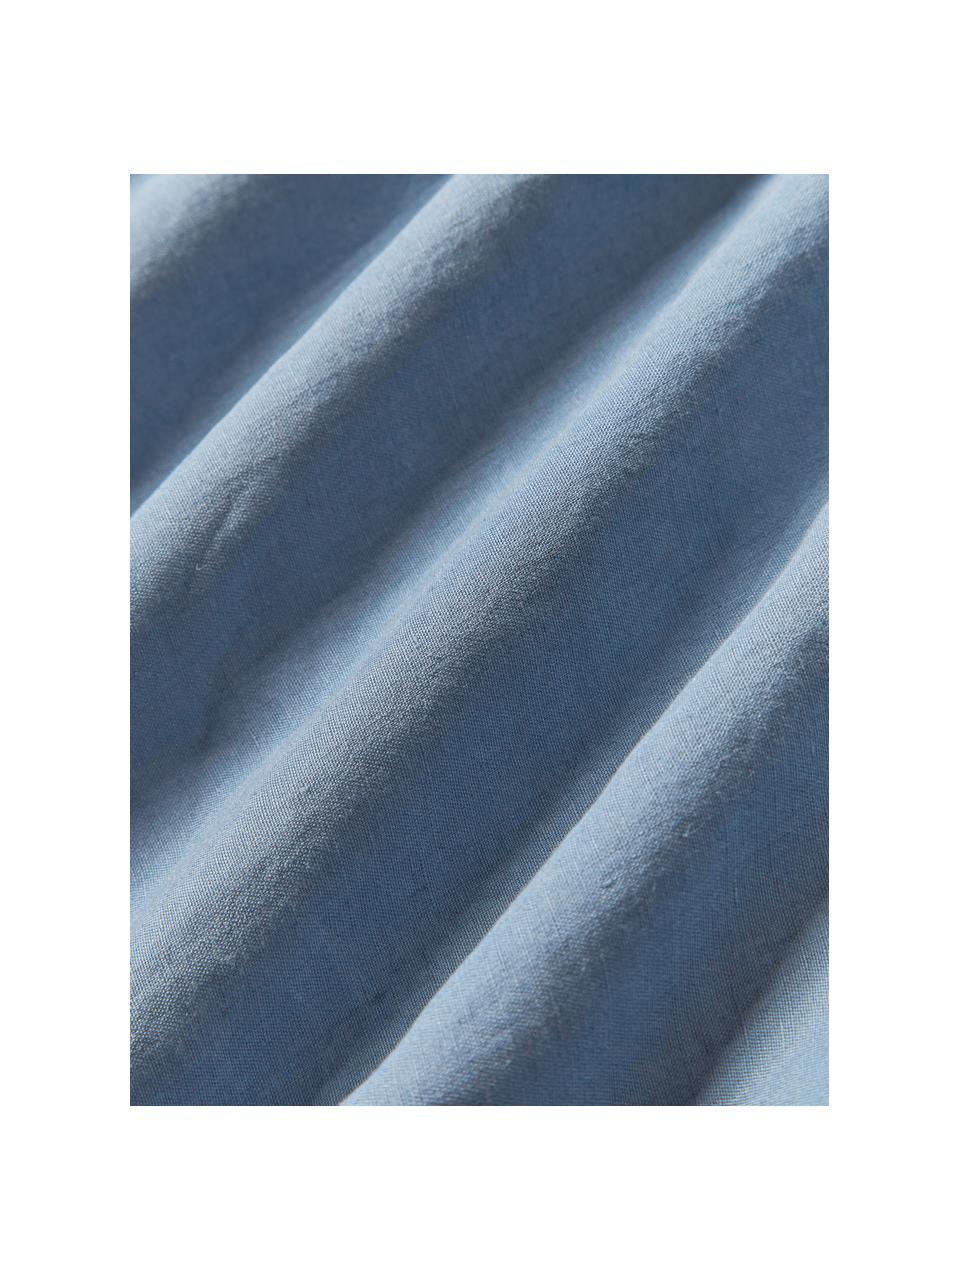 Drap-housse en lin délavé pour sommier tapissie Airy, Bleu, larg. 90 x long. 200 cm, haut. 35 cm